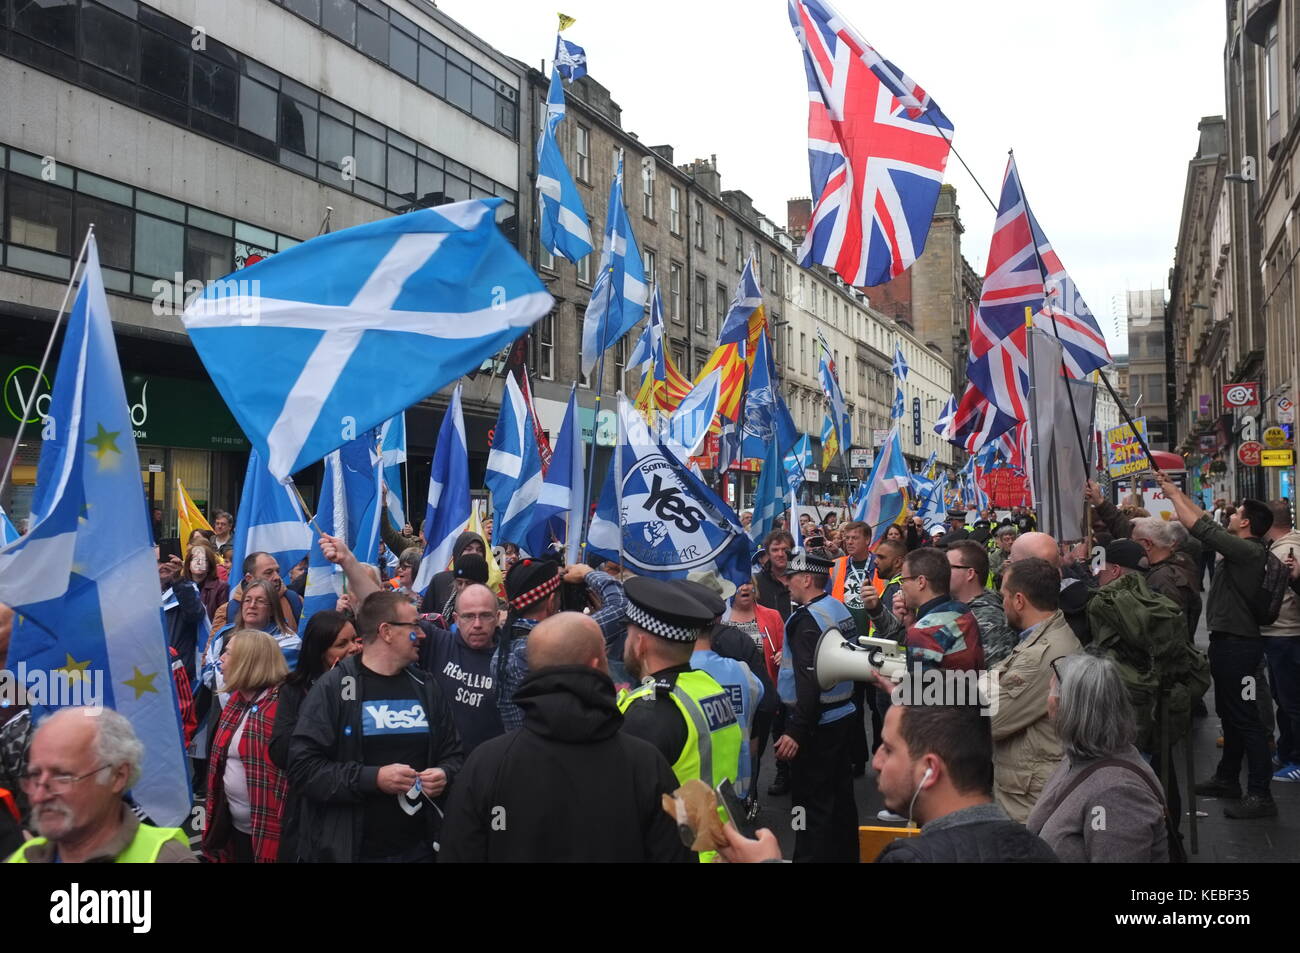 Pro-indépendance rallye organisé par l'espoir sur la peur, Glasgow, Ecosse, Royaume-Uni. 16 septembre 2017. Banque D'Images